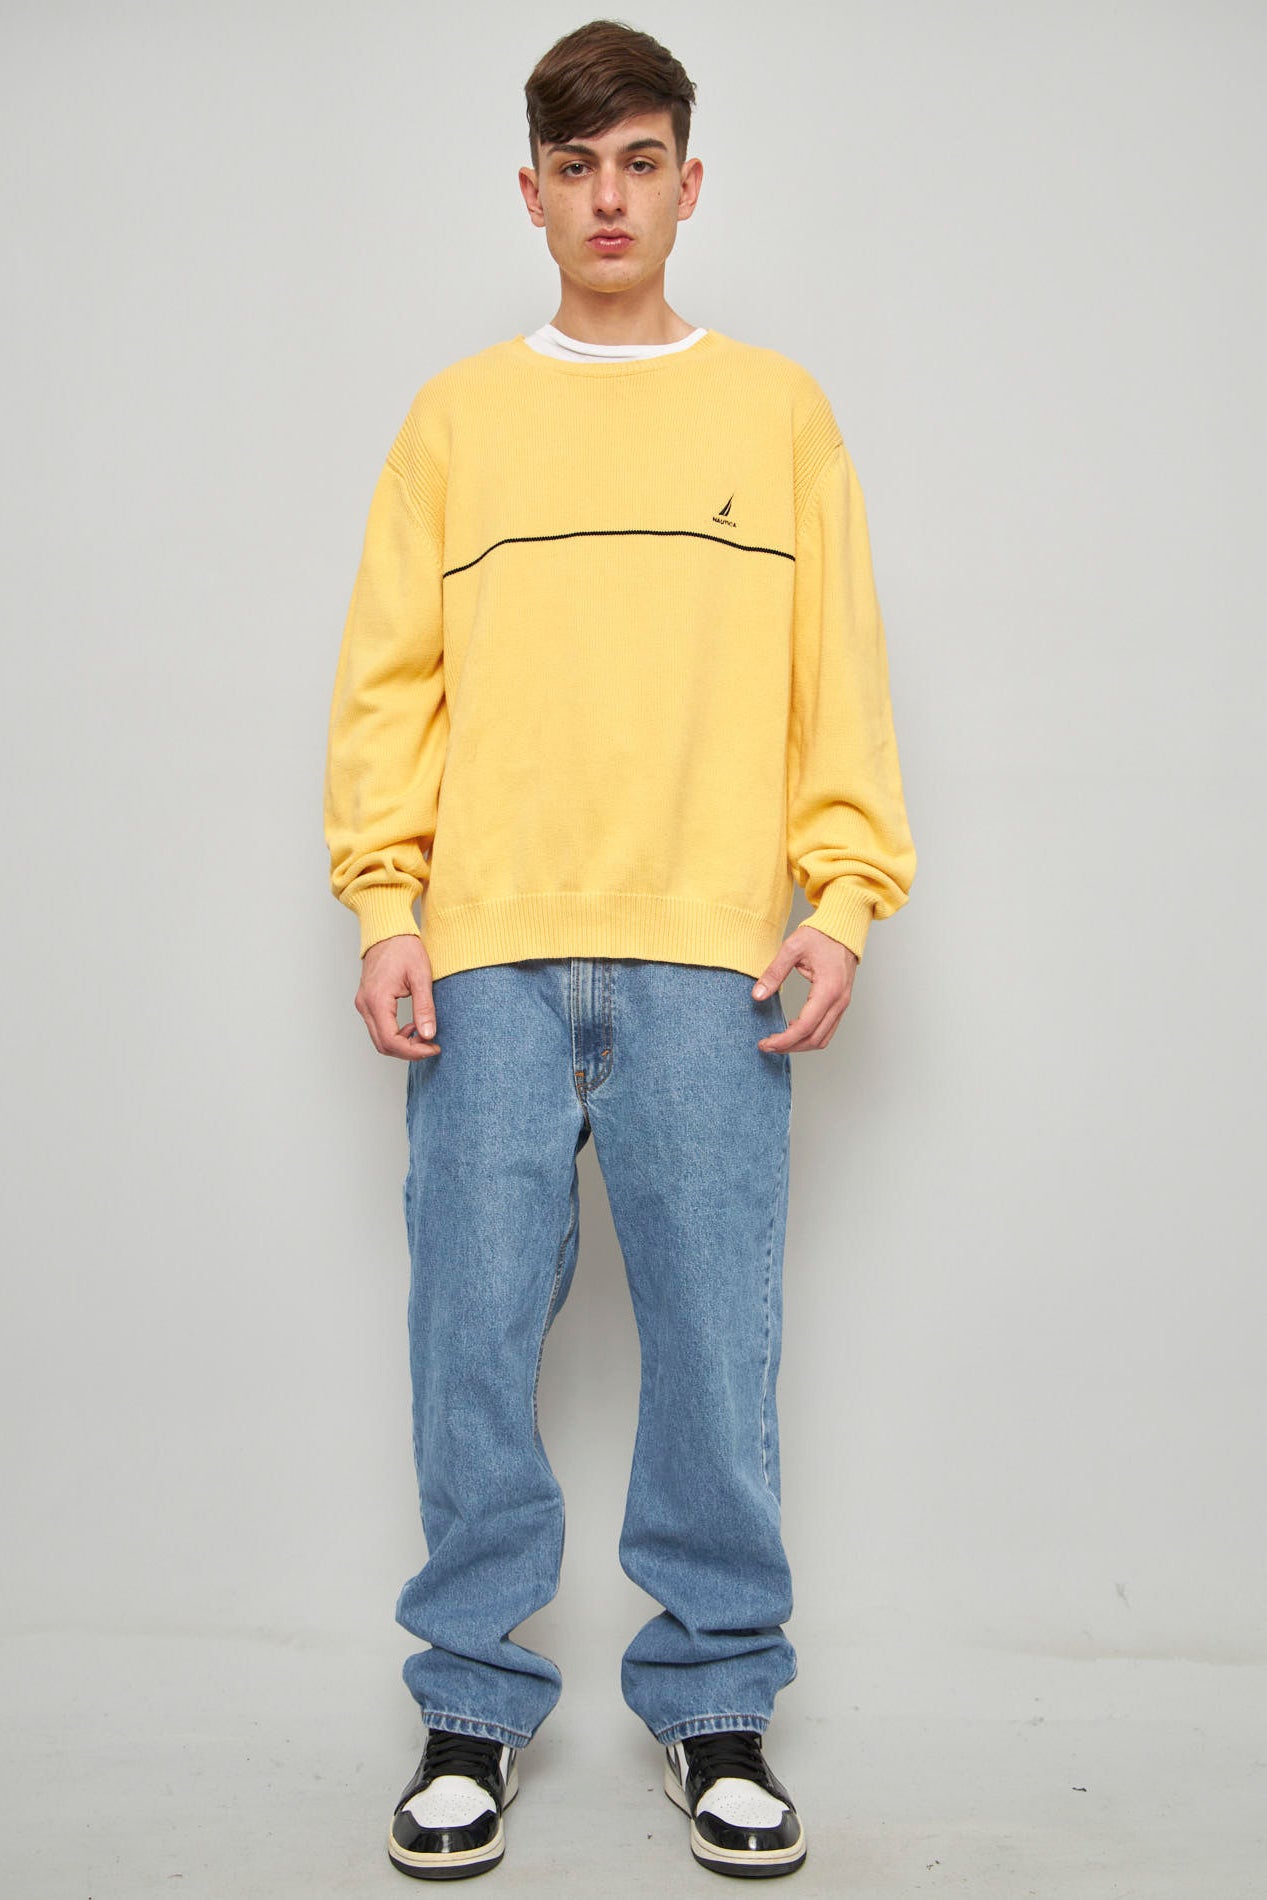 Sweater casual  amarillo nautica talla M 445